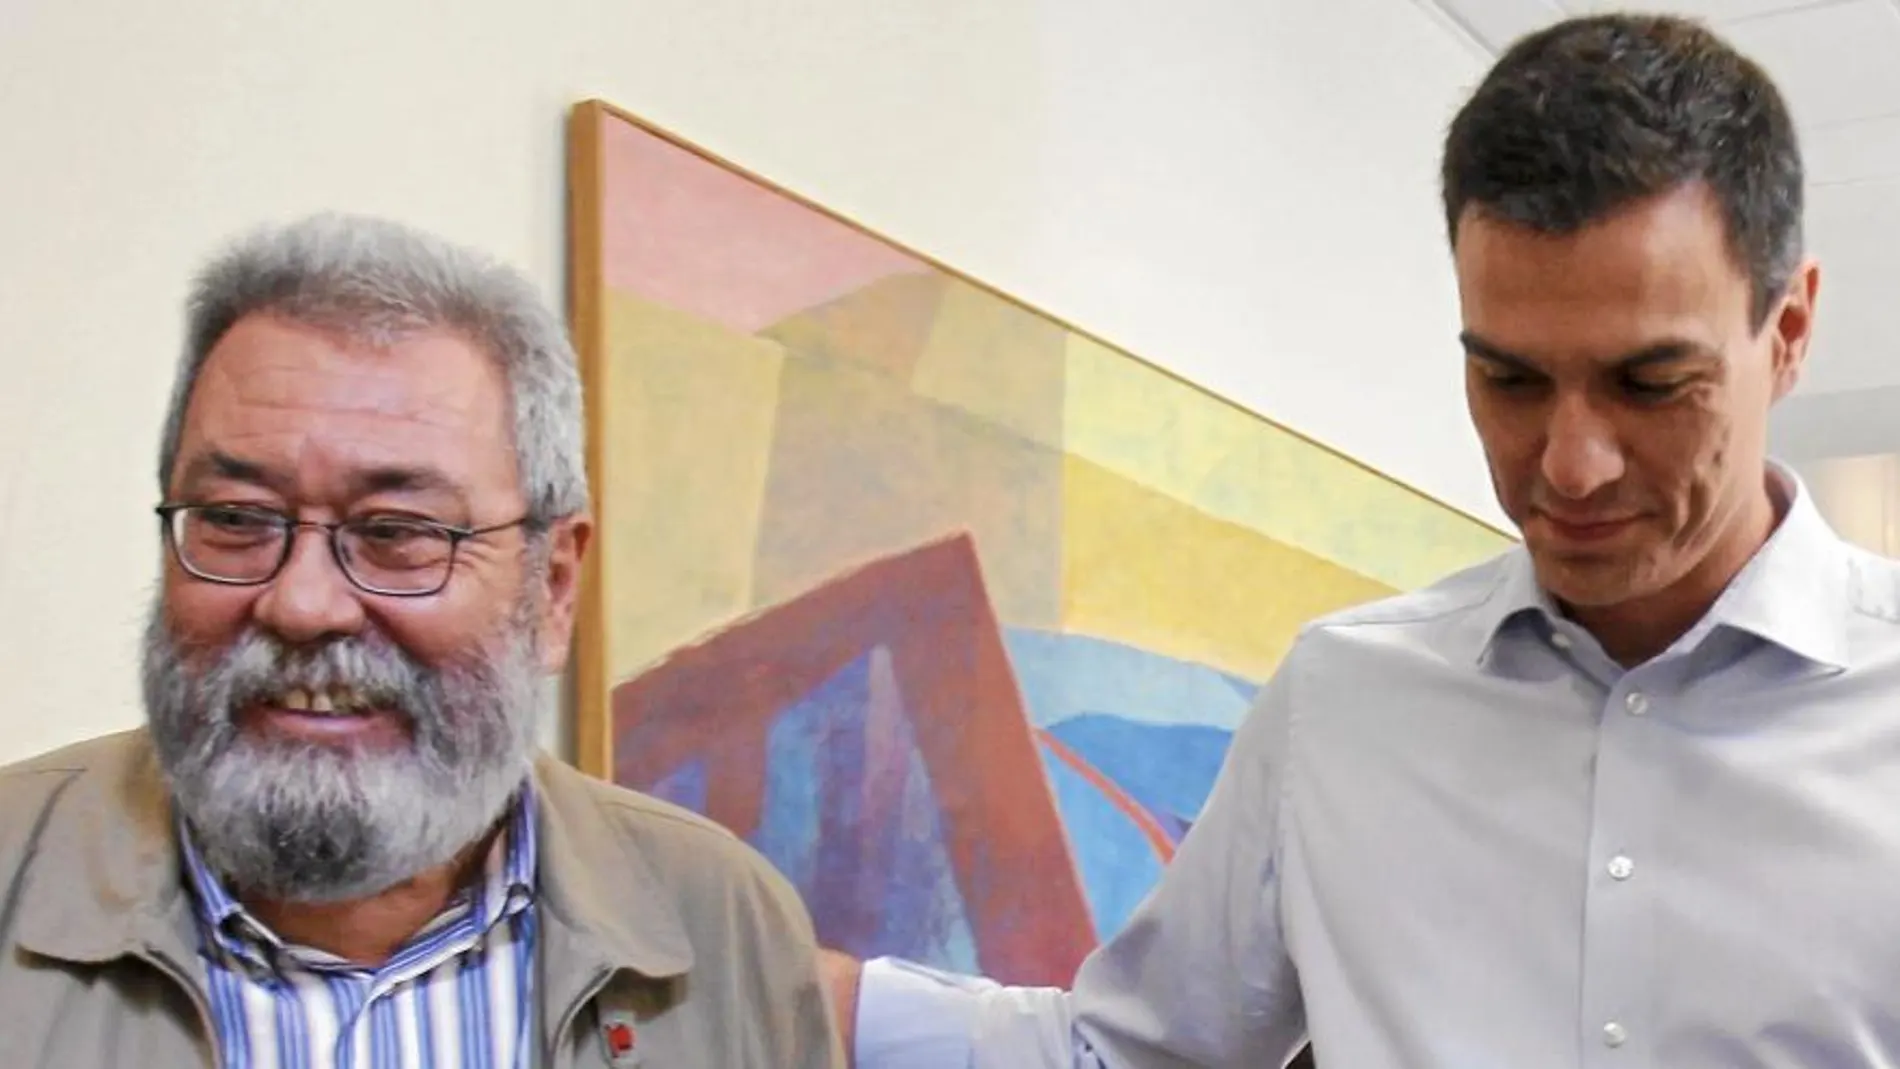 El secretario general de UGT, Cándido Méndez, se reunió ayer con el futuro líder del PSOE, Pedro Sánchez